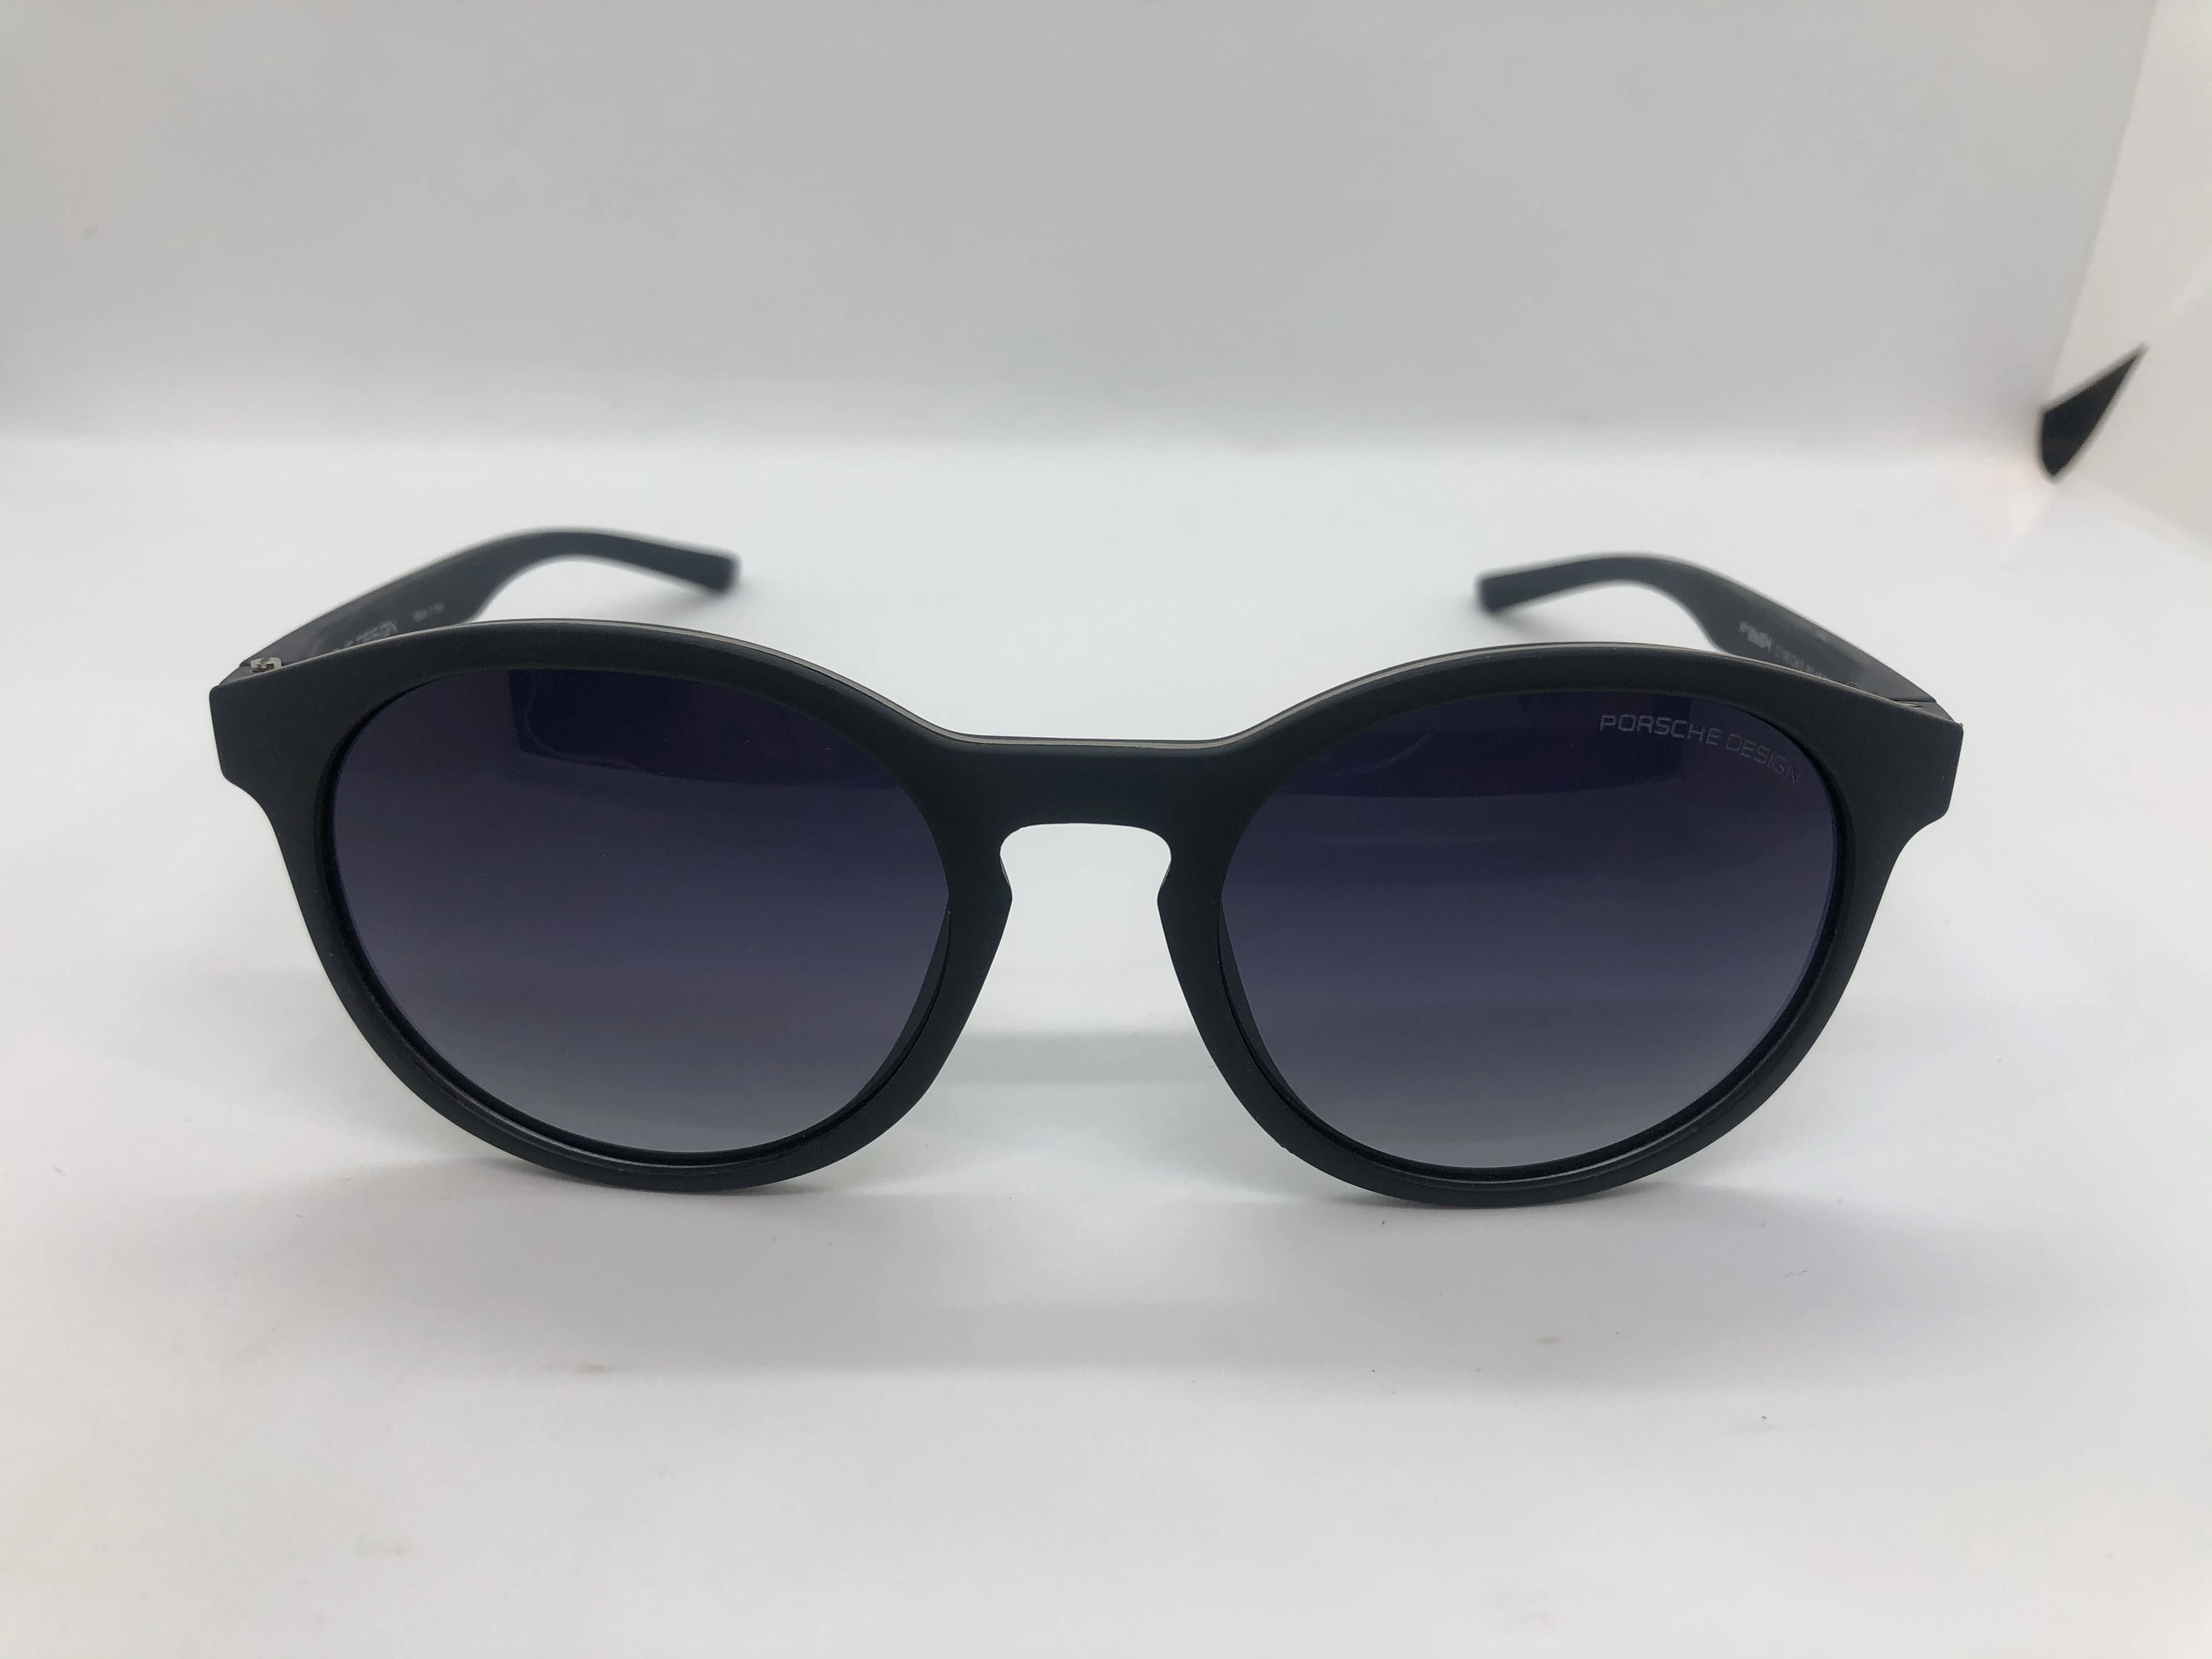 Sunglasses - Porsche Design - with a black frame polycarbonate - black gradient lenses - and a black arm - for men